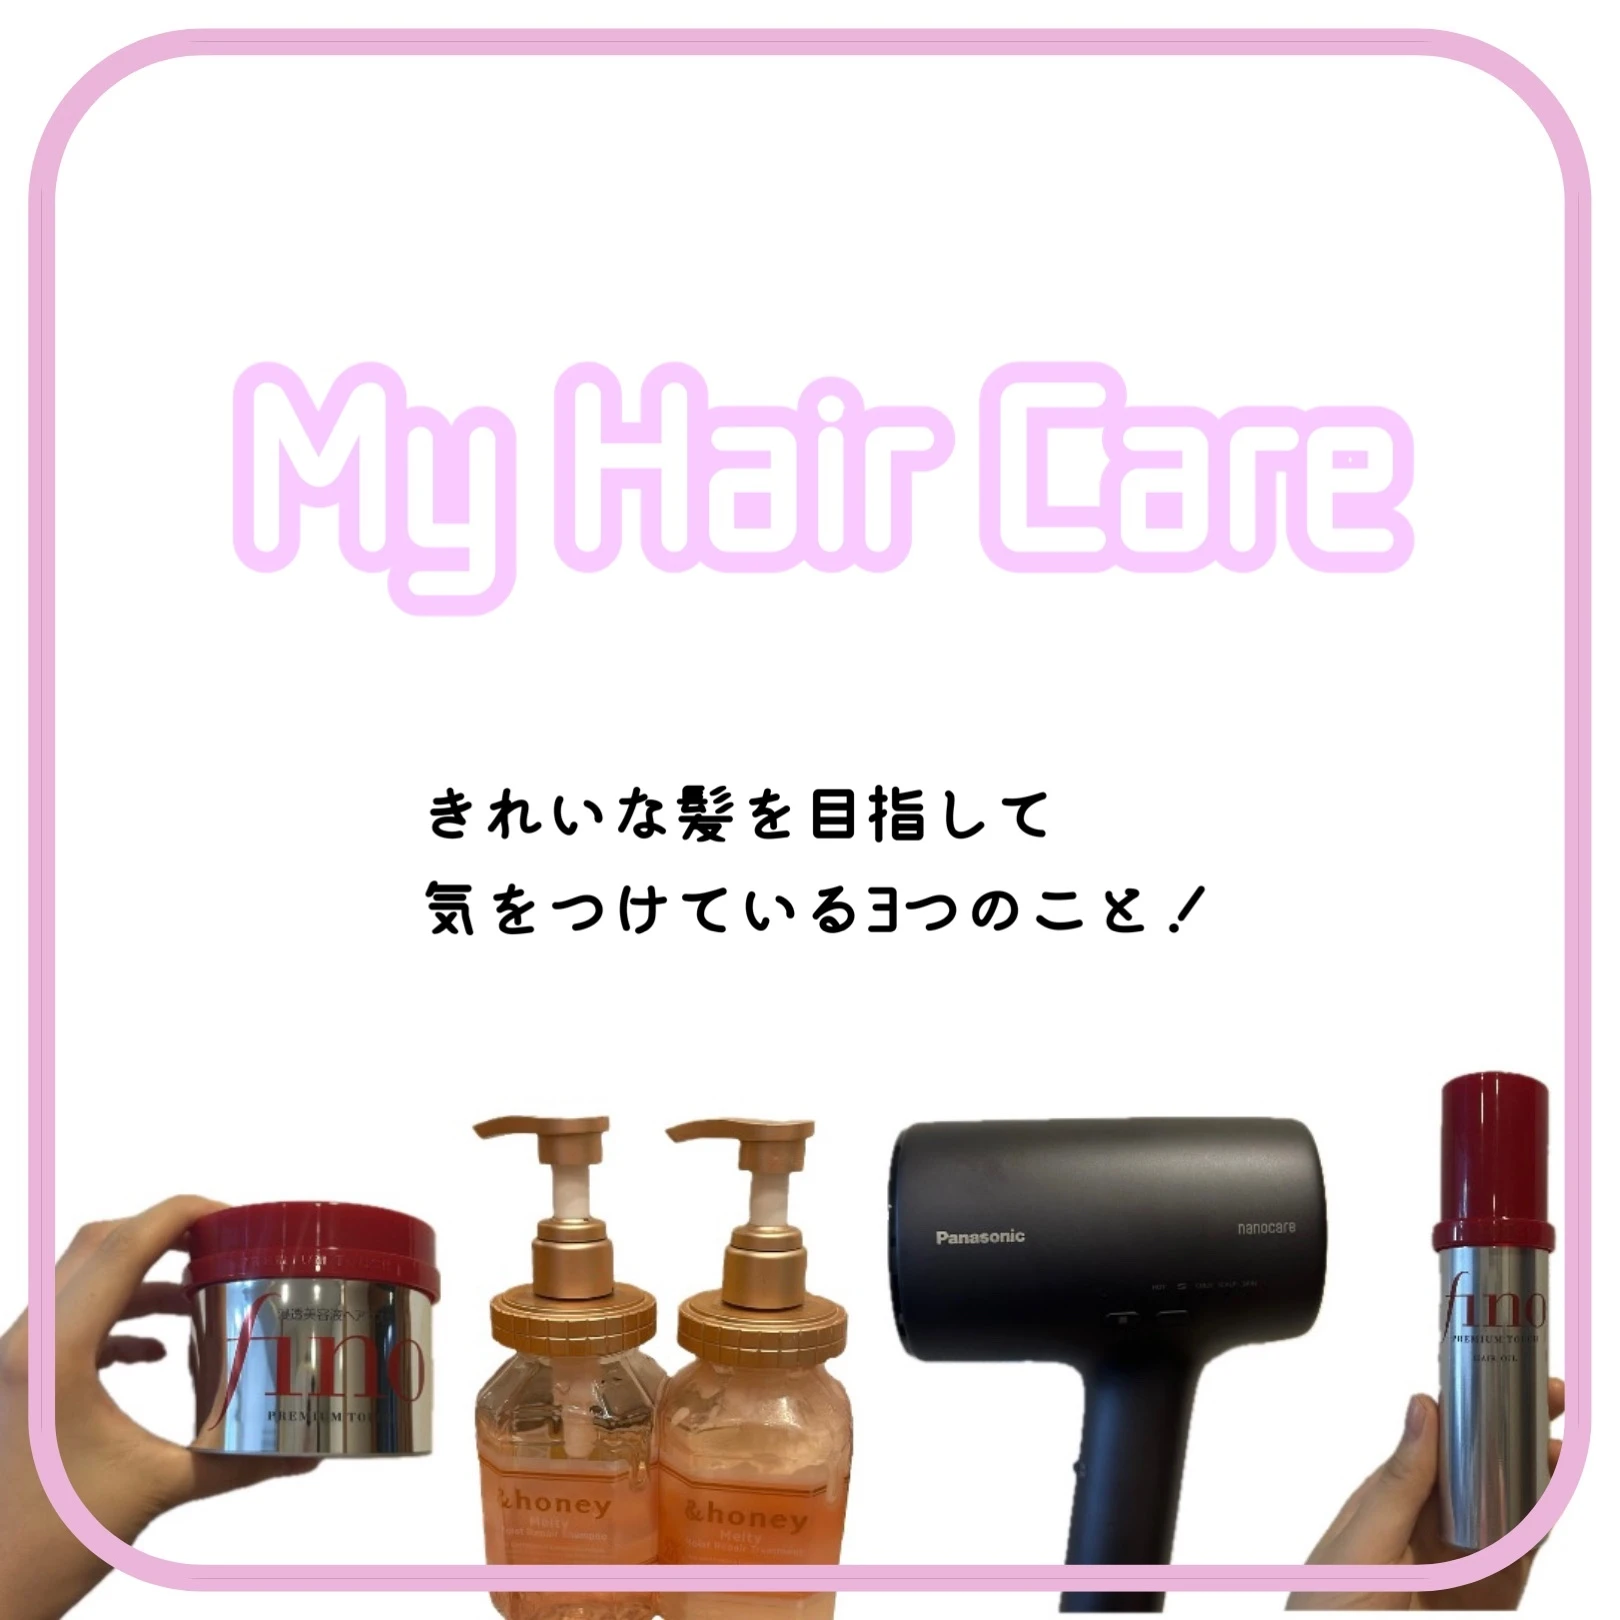 My hair care